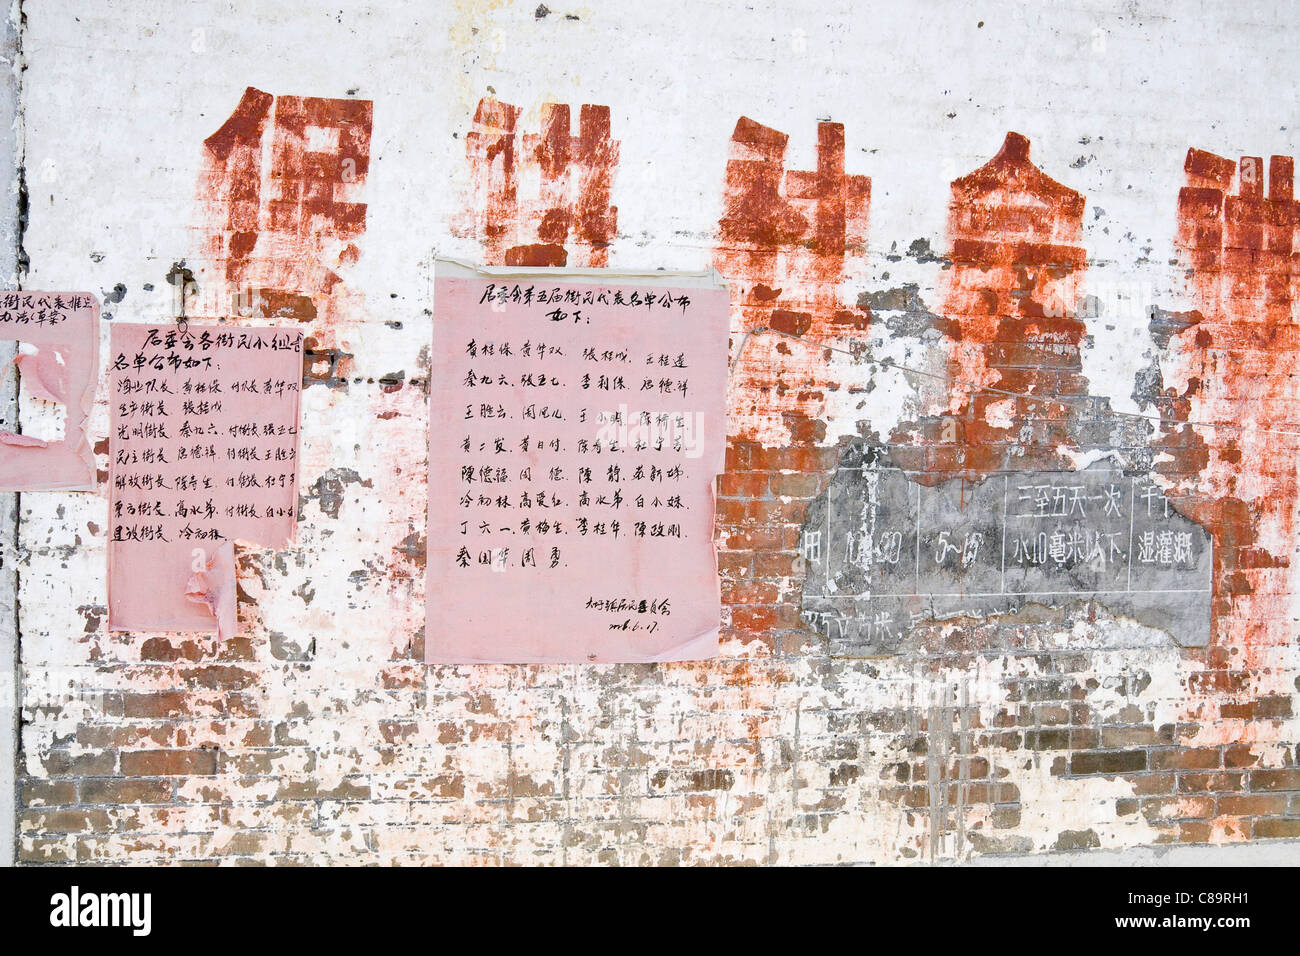 La Chine, Xing Ping, voir des affiches sur le mur chinois Banque D'Images